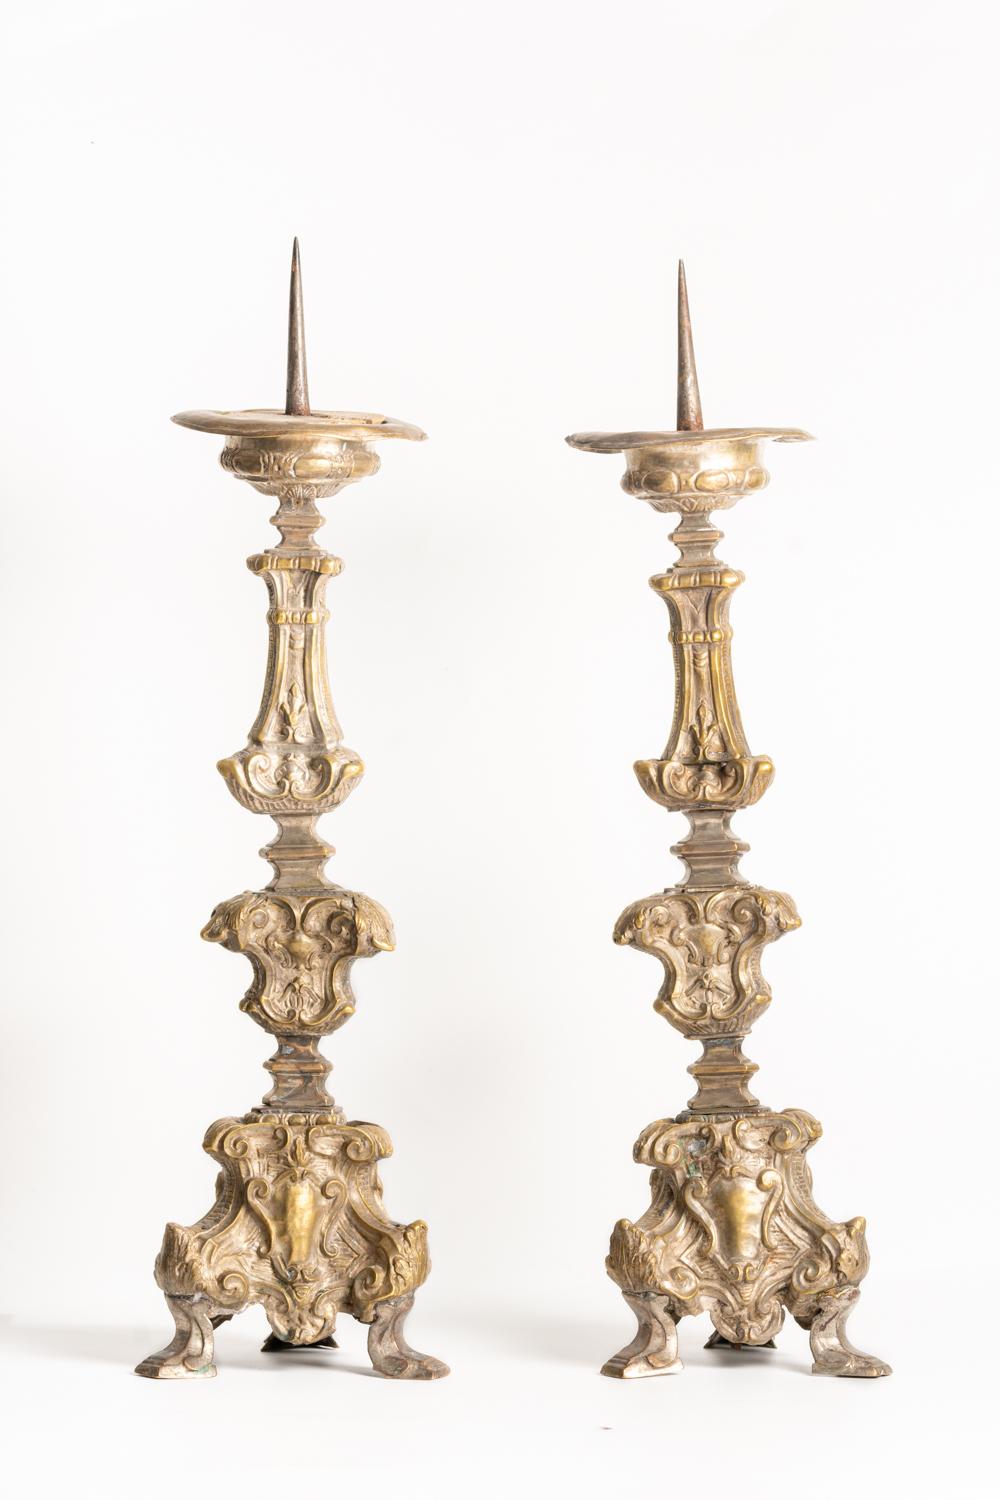 Ein feines Paar italienischer Kerzenständer aus Messing aus dem 18. Jahrhundert, eindrucksvoll verziert im Barockstil mit geknickten Stielen und dreiförmigen Basen, verziert mit Kartuschen und Blattwerk. Die Säulen sind auf beiden Seiten mit den für